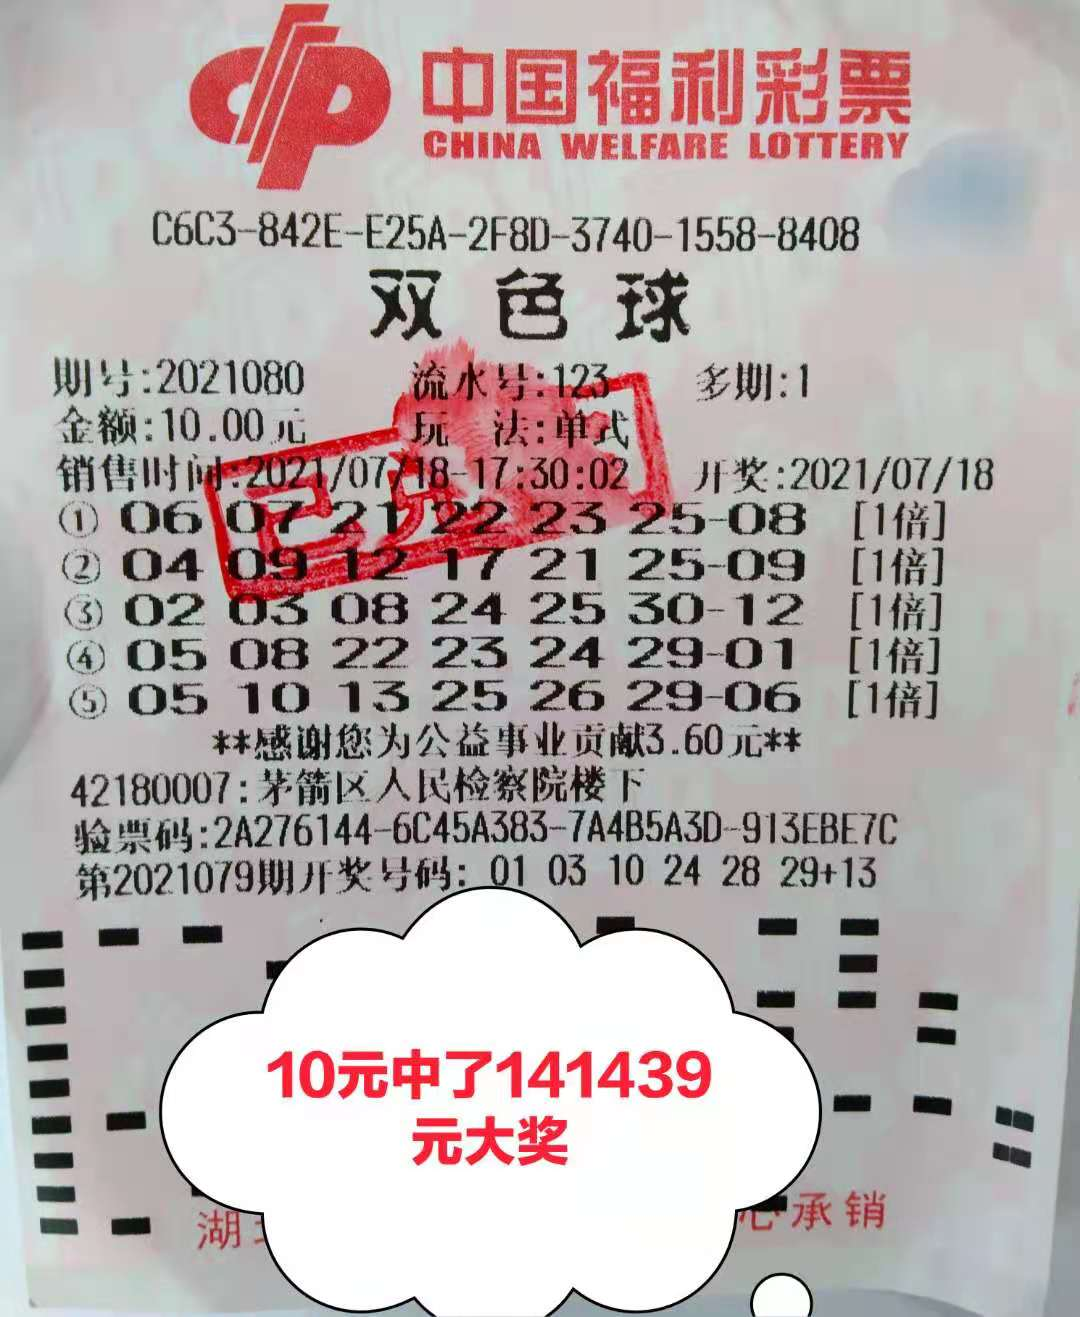 【兑奖直击】10元机选:喜中双色球14万元大奖